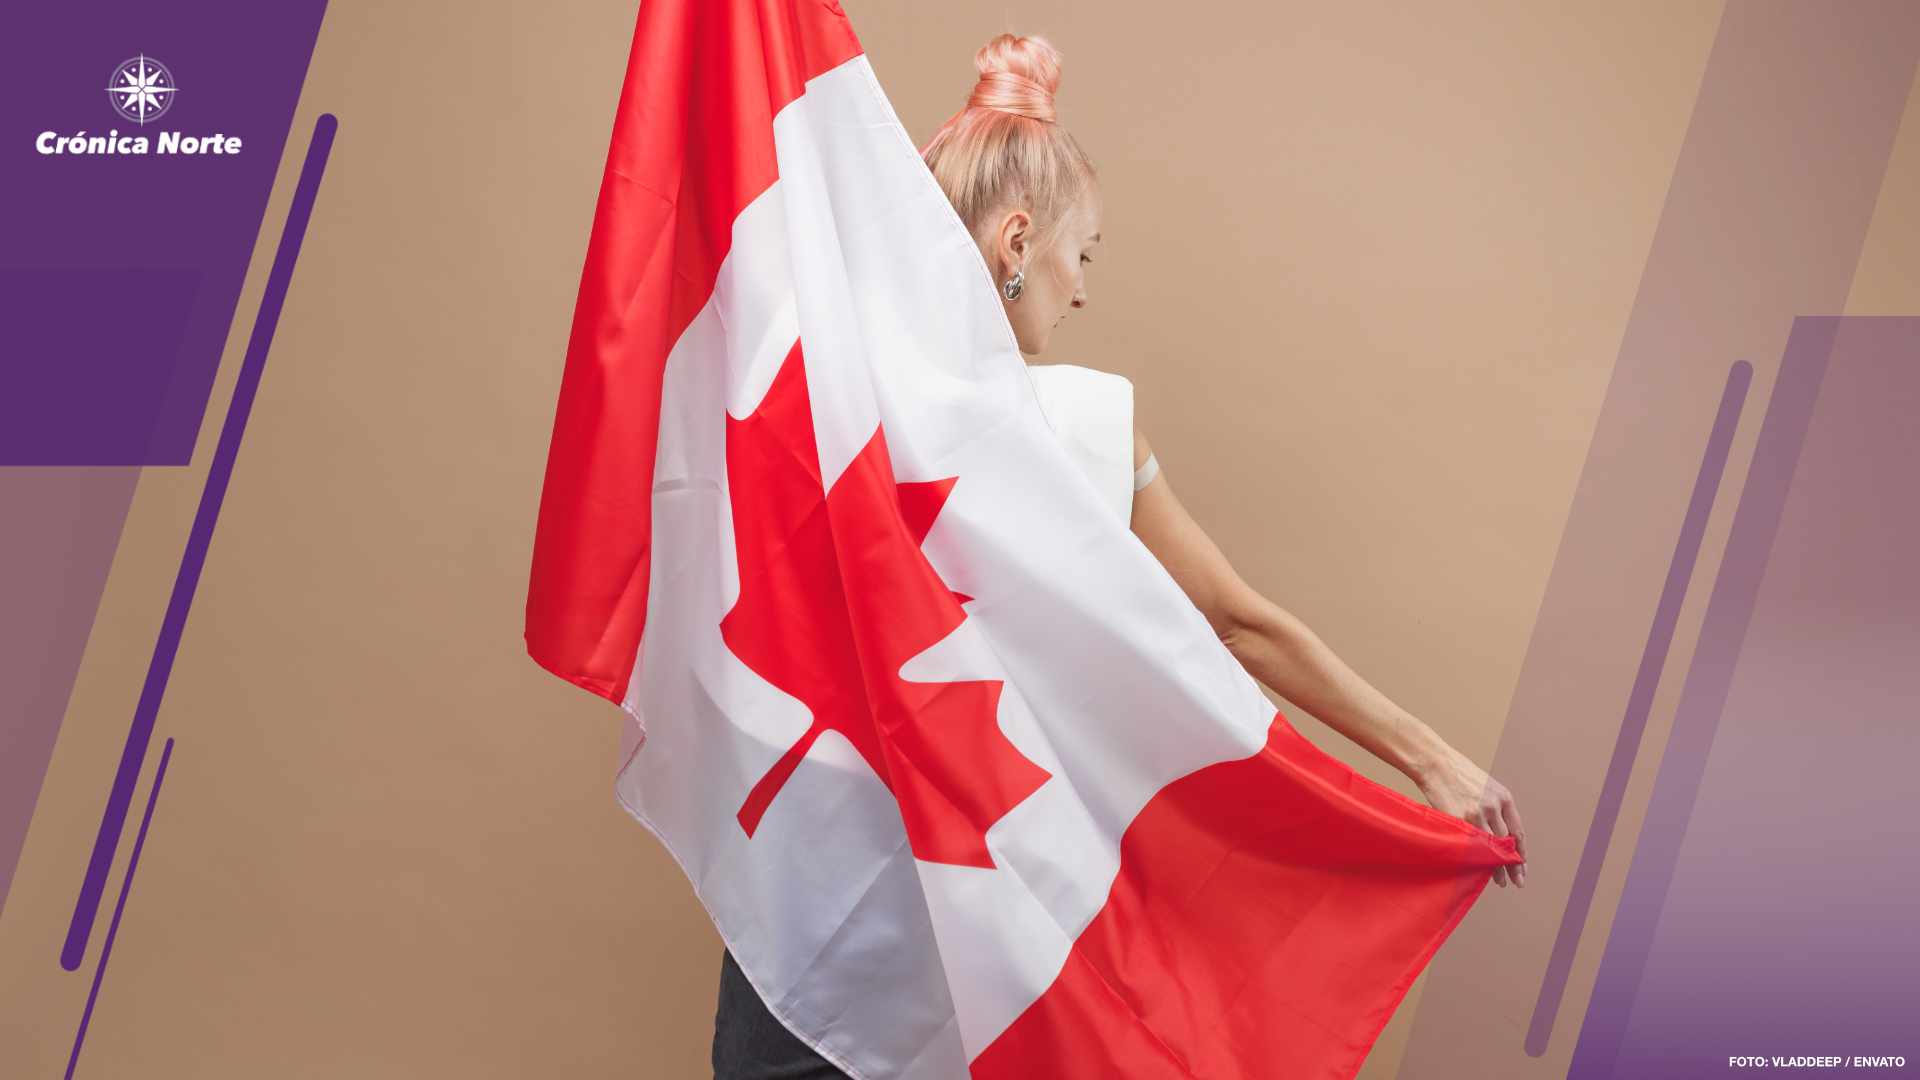 Ottawa avala reconocimiento a los “canadienses perdidos”